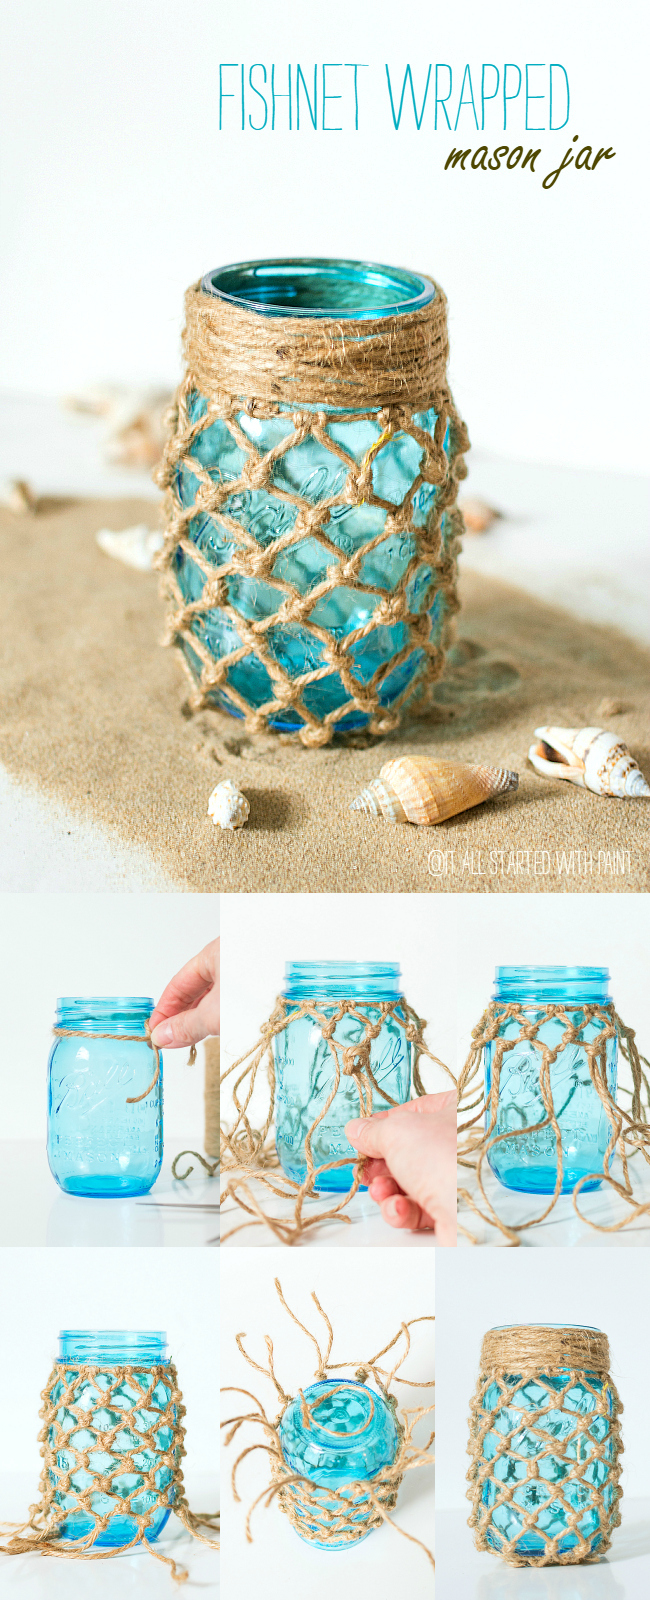 50 Cute DIY Mason Jar Crafts - DIY Projects for Teens